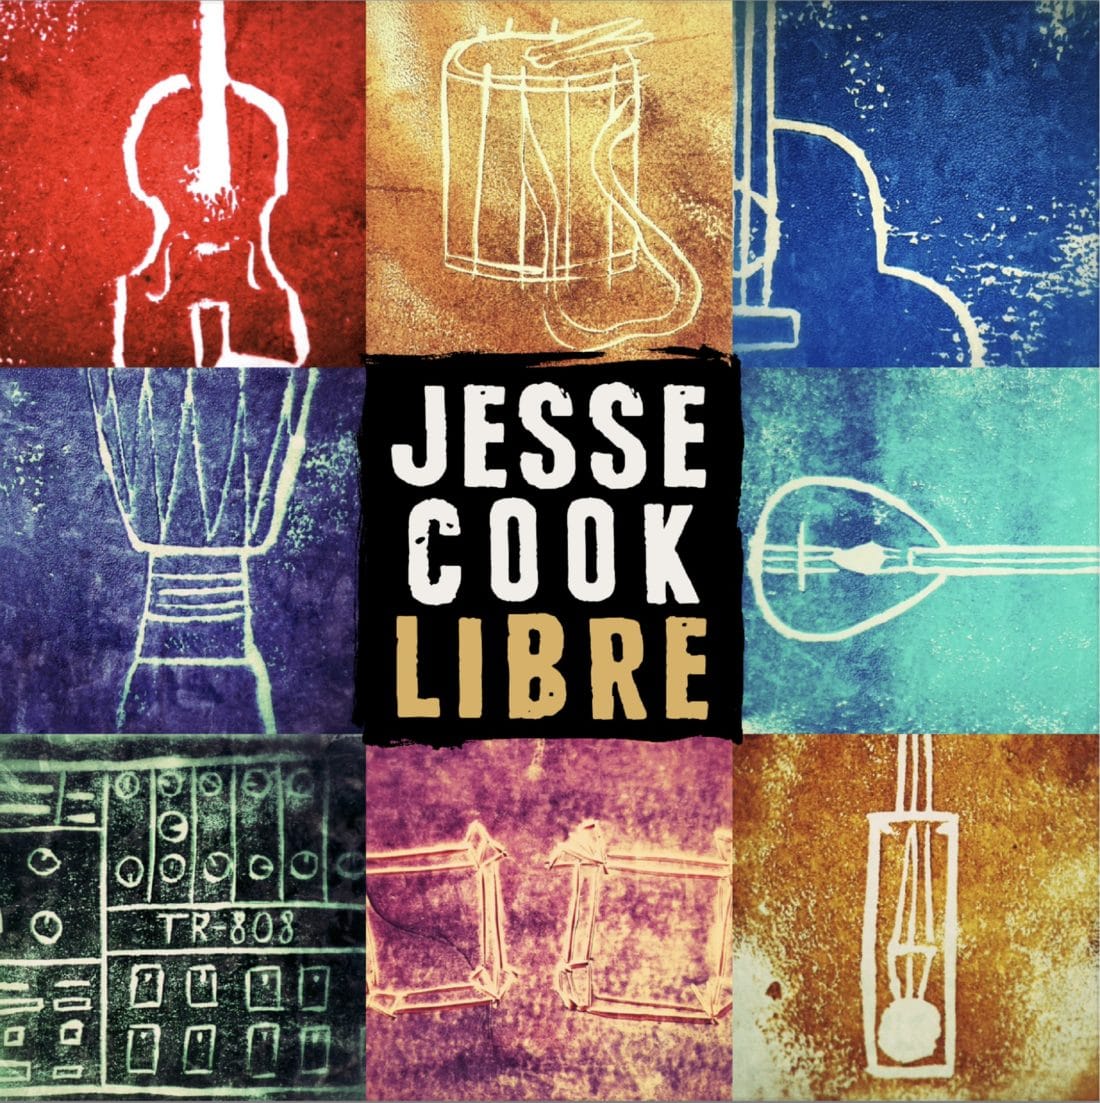 jesse cook libre tour